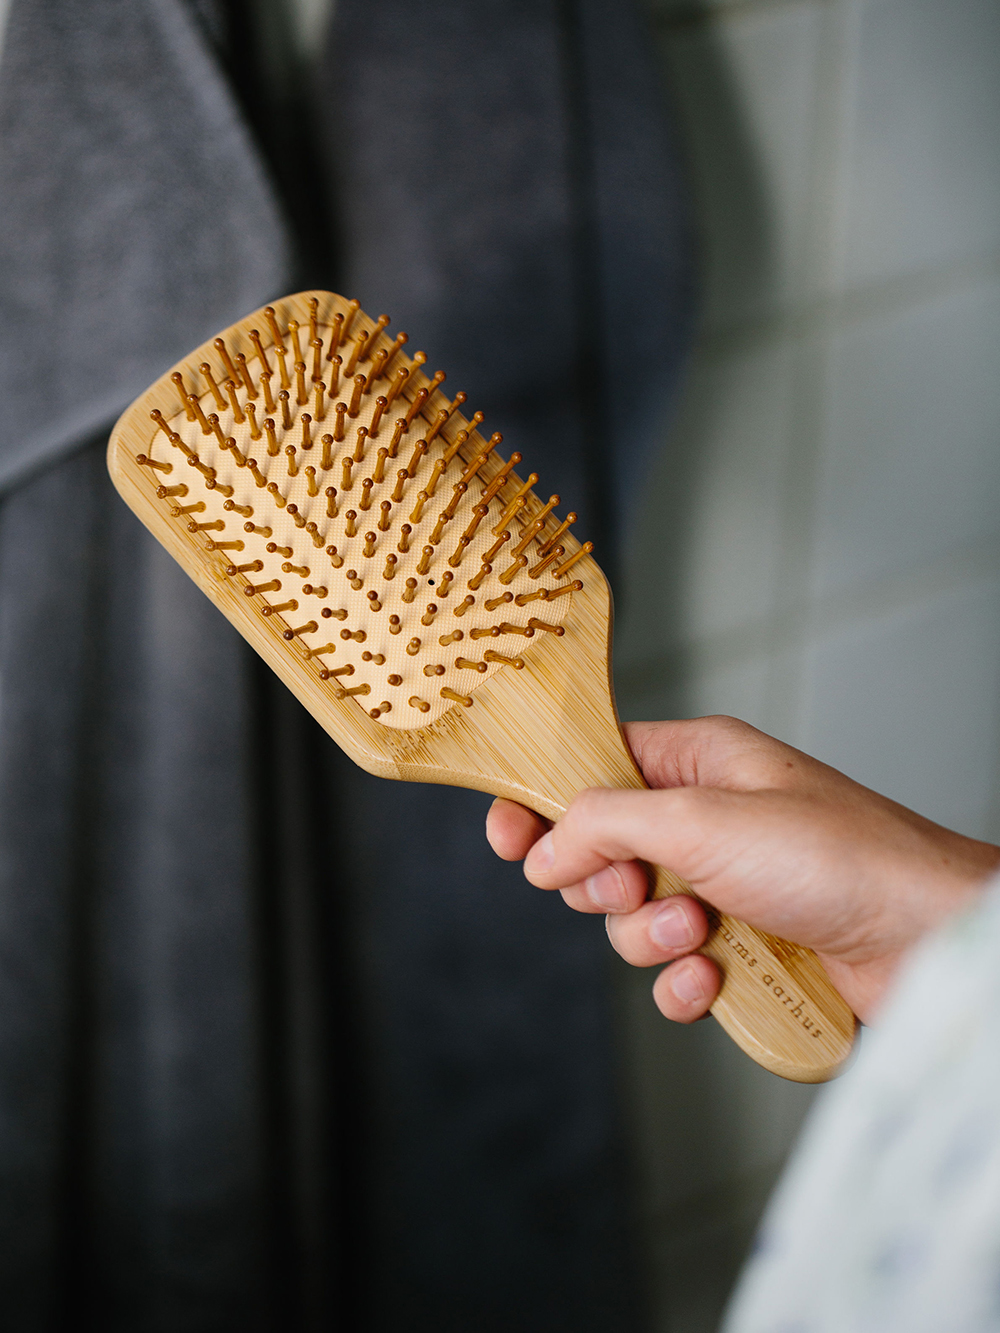 grums bamboo hairbrush